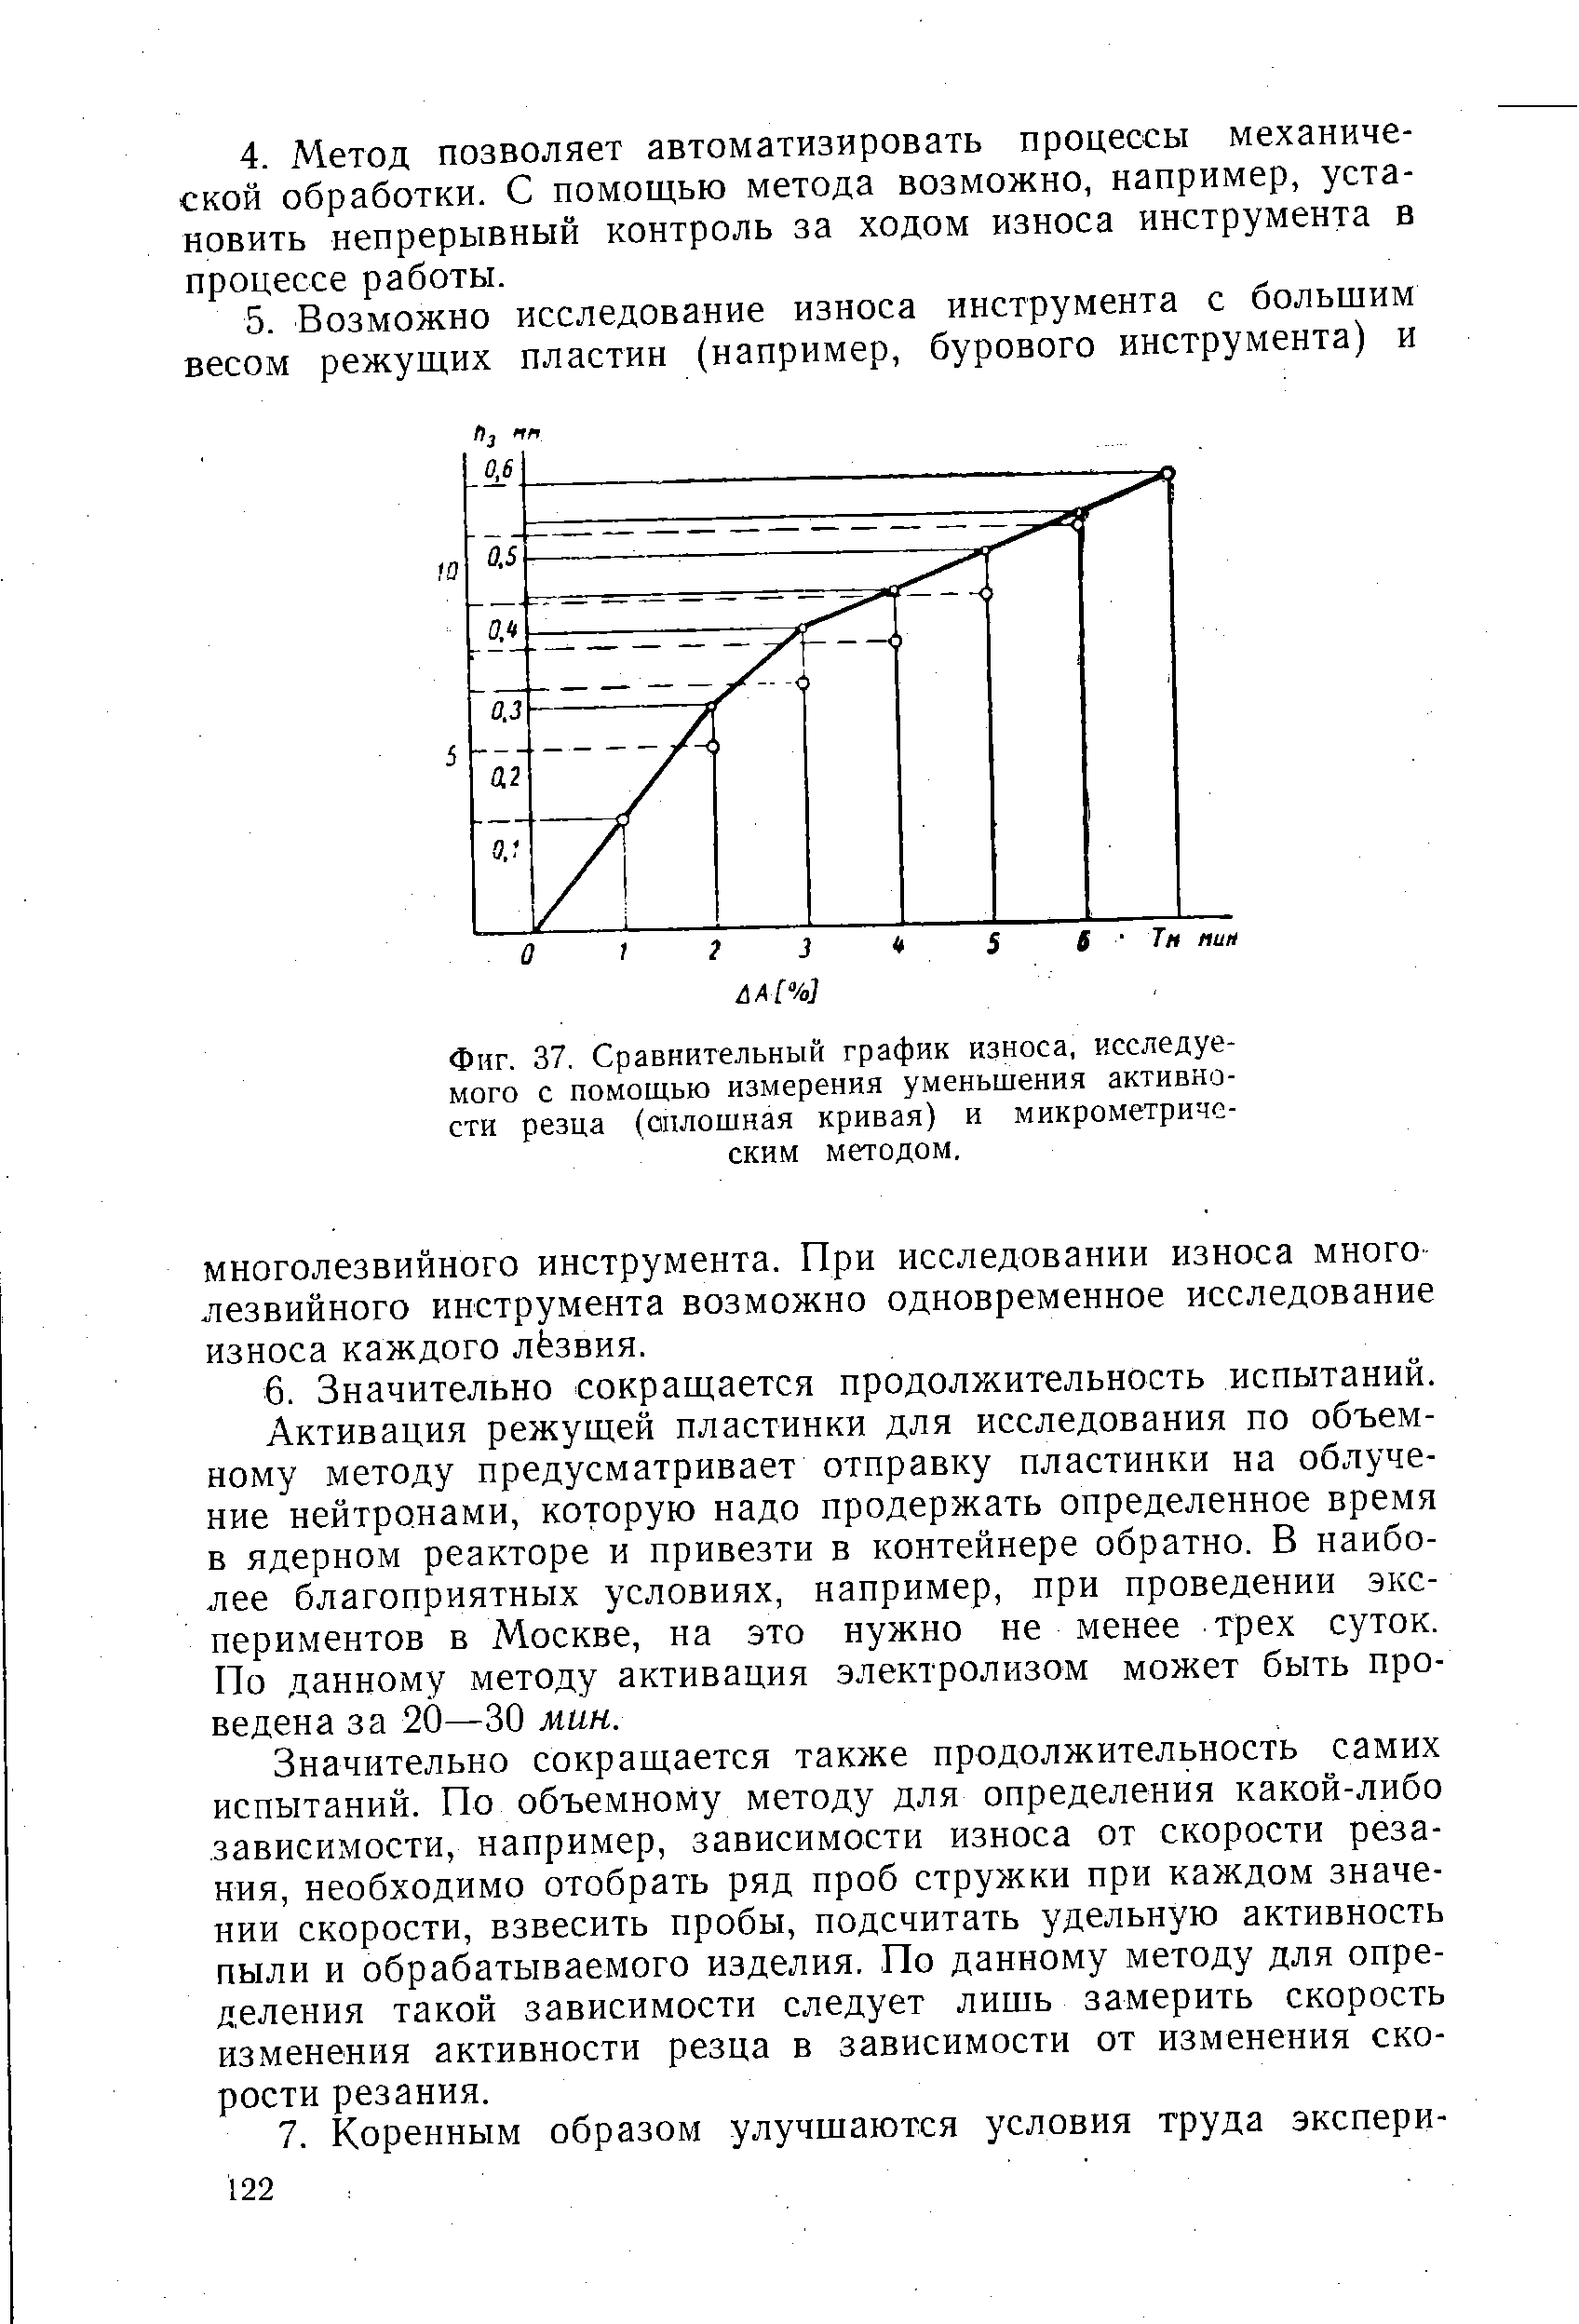 Фиг. 37, Сравнительный график износа, исследуемого с помощью измерения уменьшения активности резца (оплошная кривая) и микрометрическим методом.
